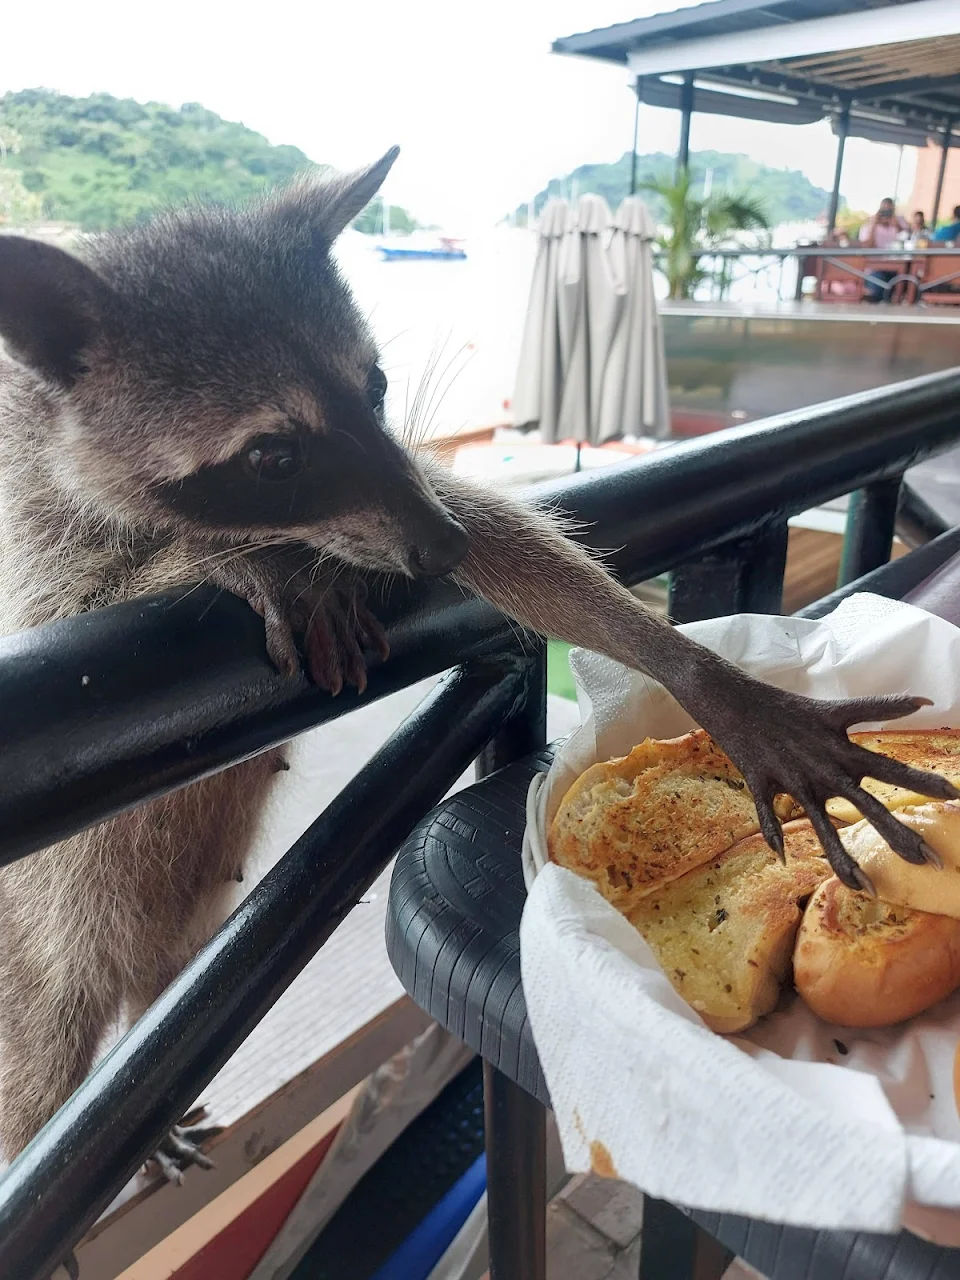 Shovelcat stealing garlic bread.